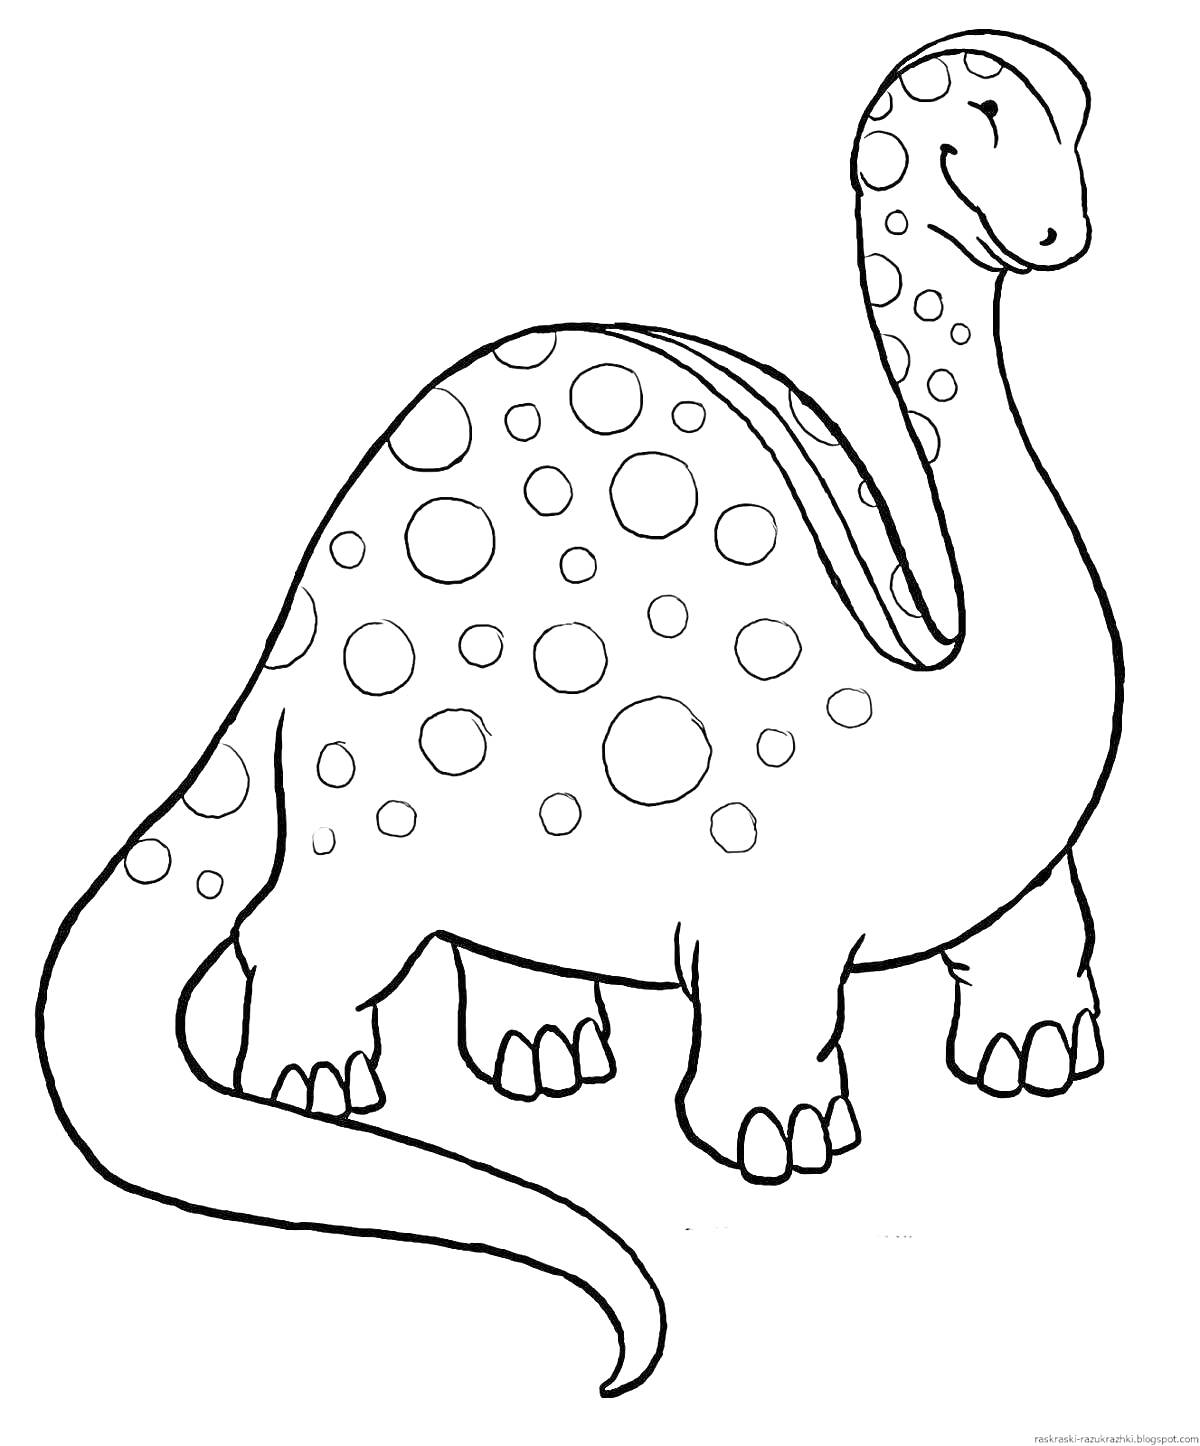 Раскраска Динозаврик с пятнами, улыбающийся, с длинной шеей и хвостом